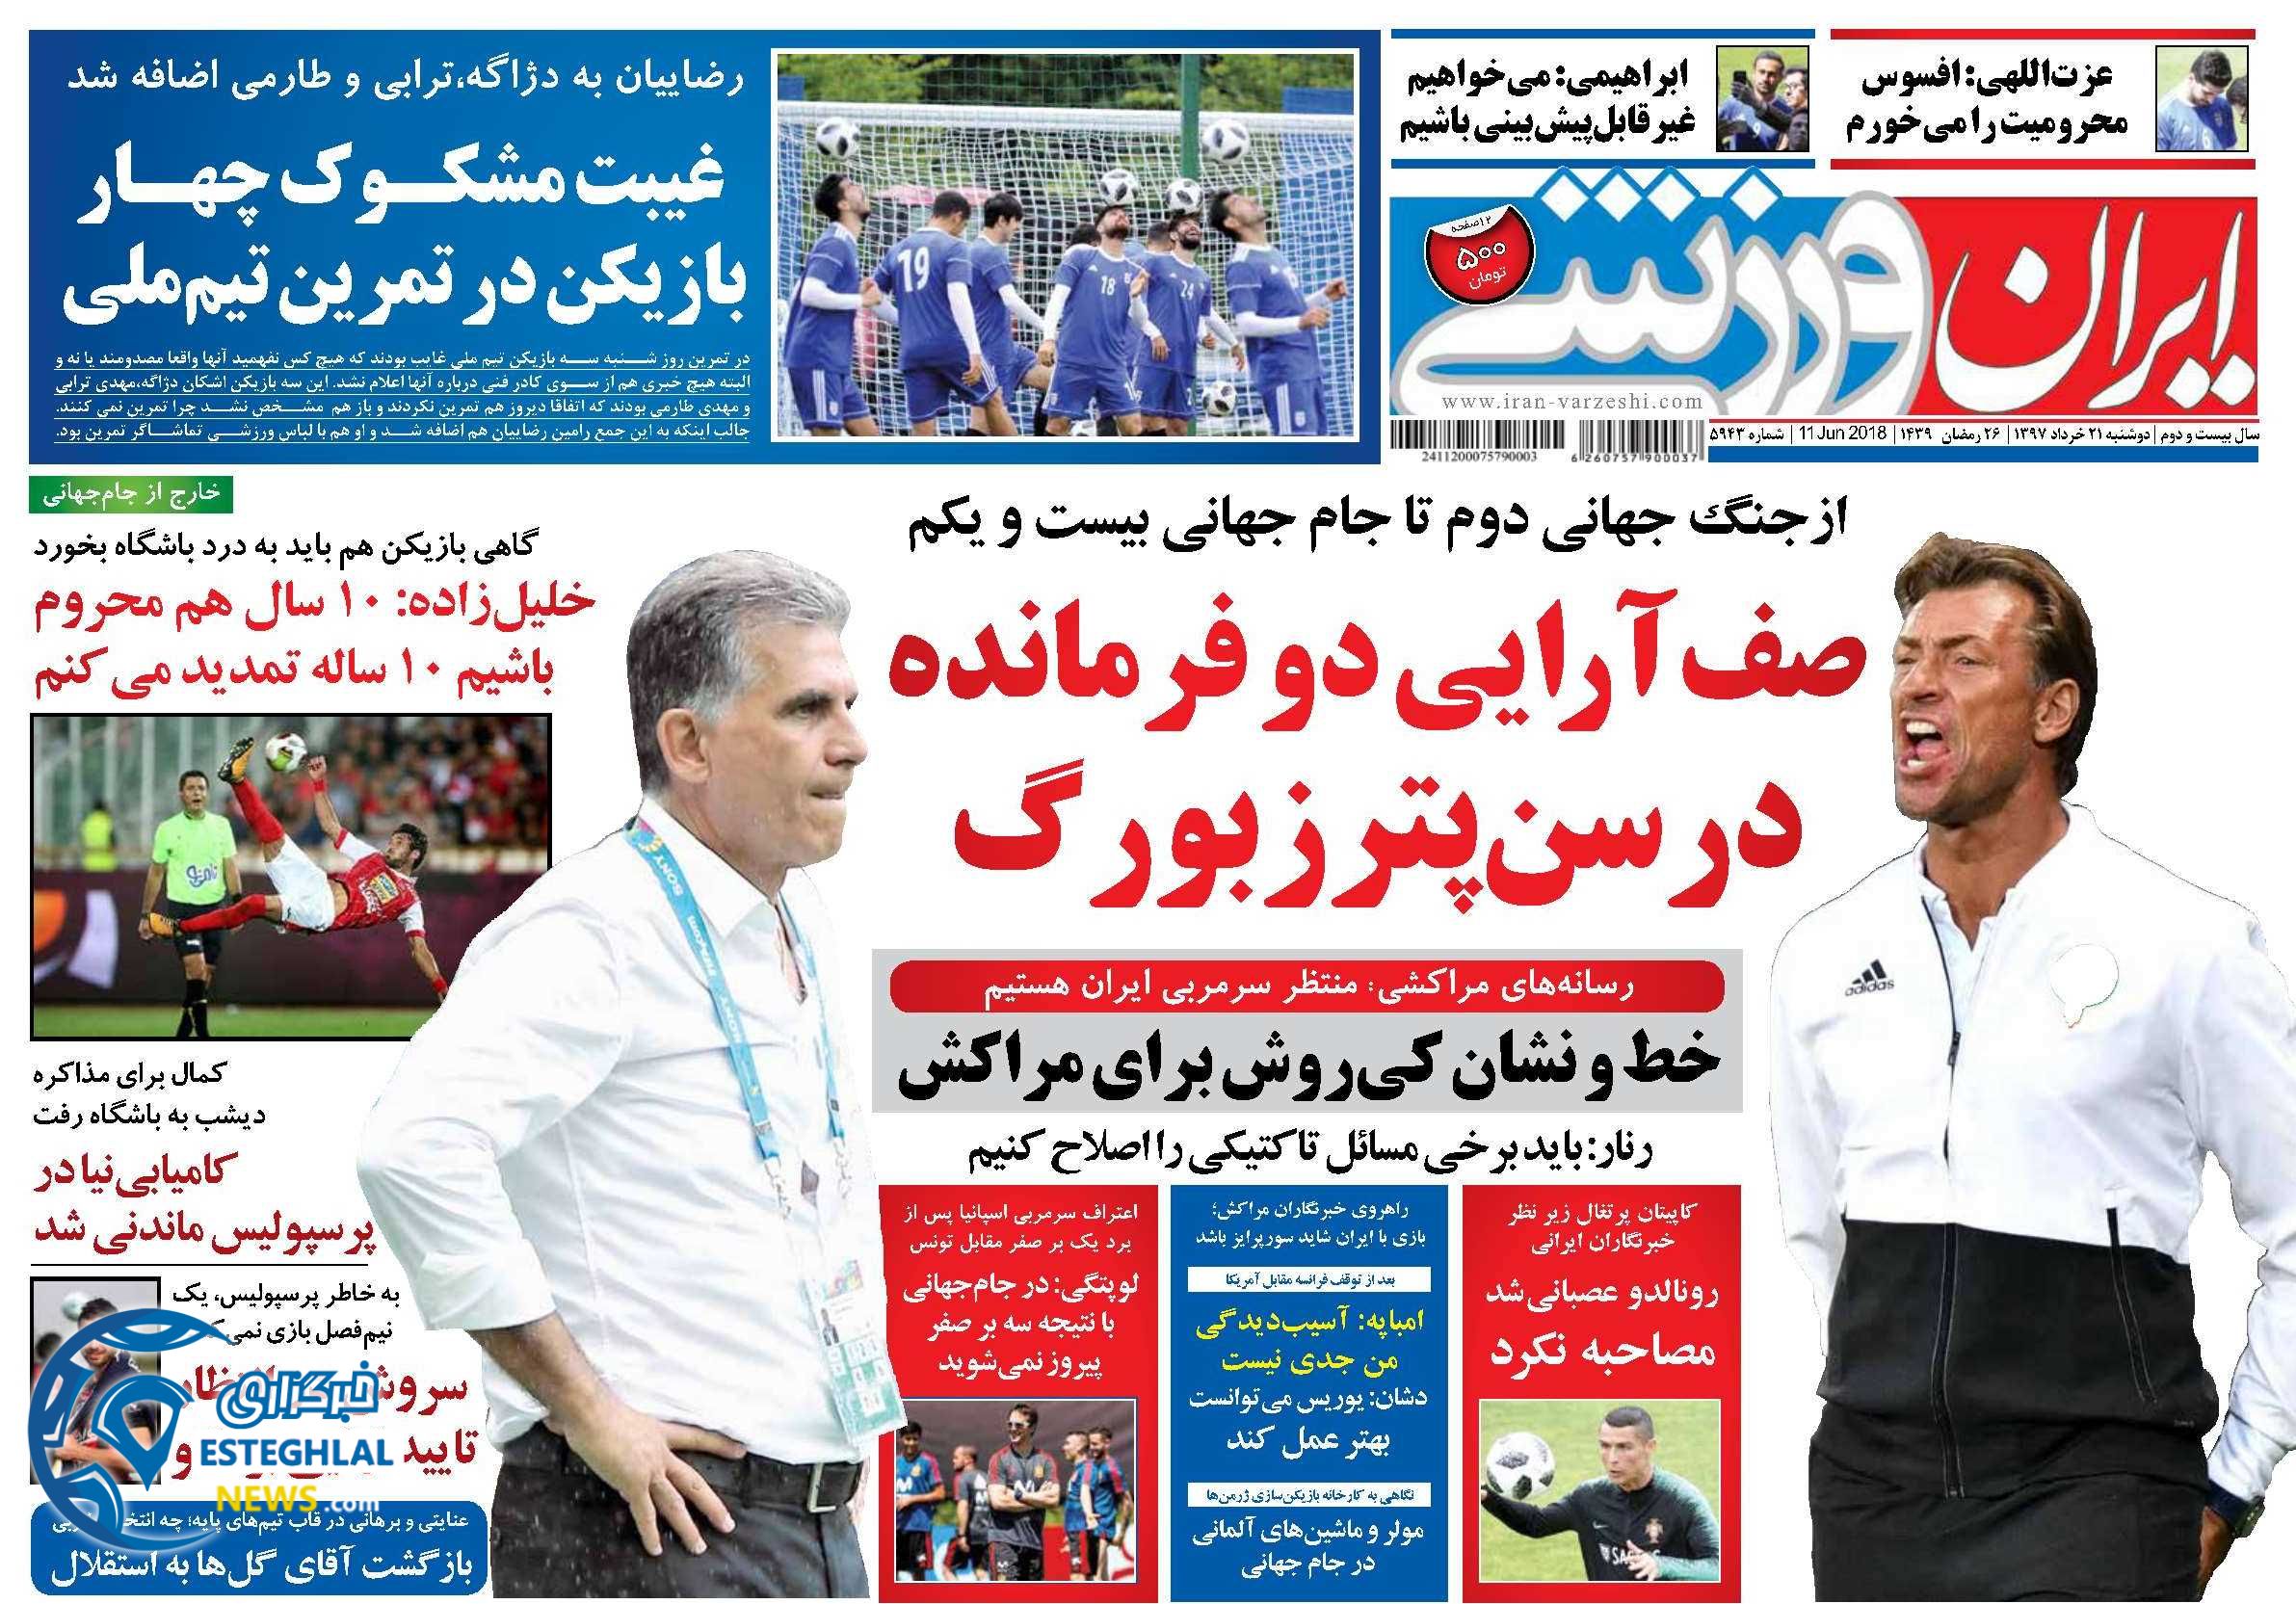   روزنامه ایران ورزشی دوشنبه 21 خرداد 1397     